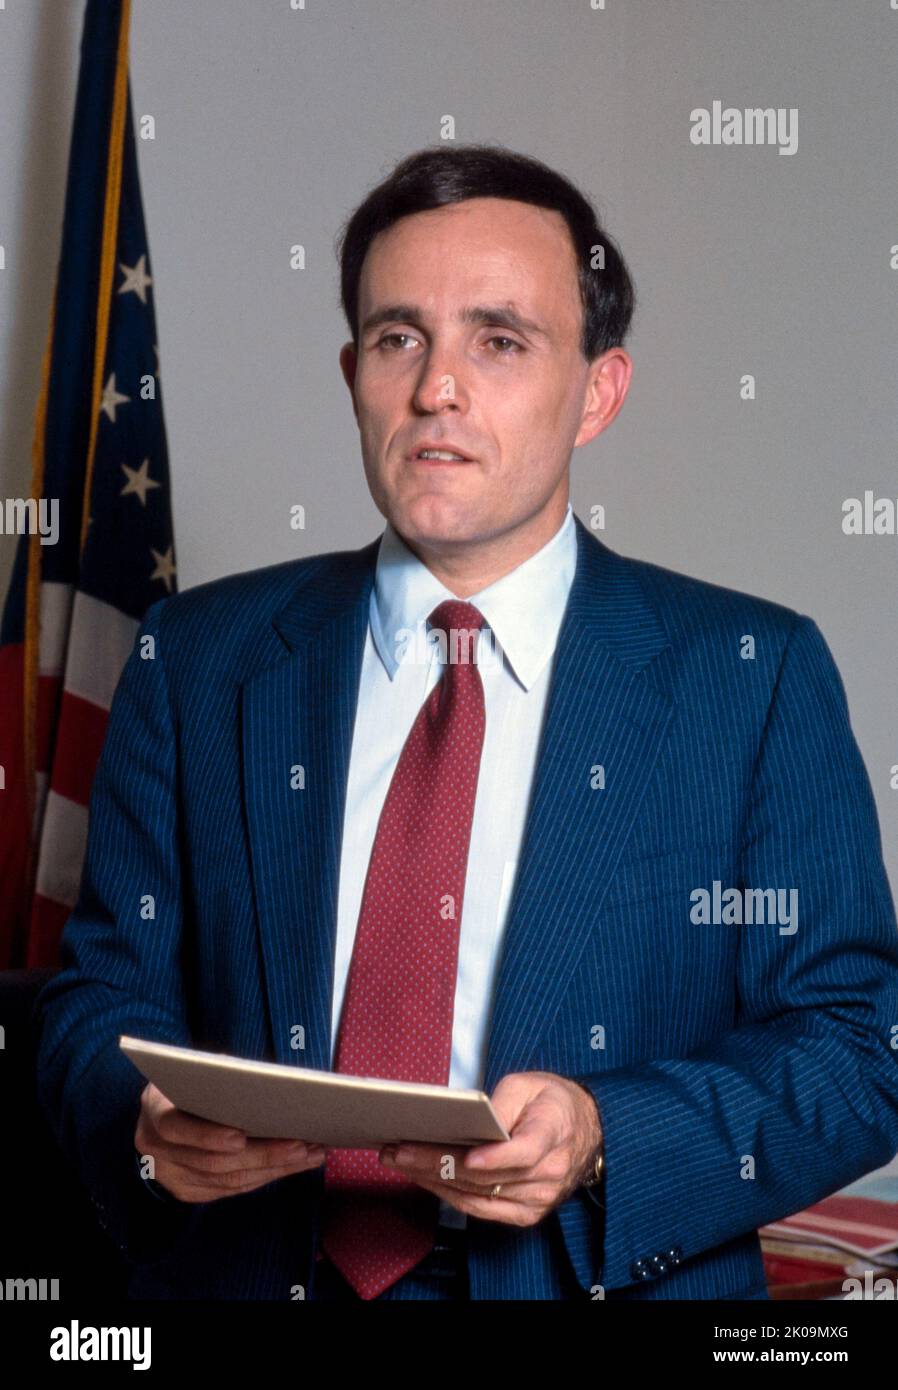 Rudolph Giuliani (geb. 1944) amerikanischer Politiker und Rechtsanwalt, der von 1994 bis 2001 als Bürgermeister von New York City 107. tätig war. Zuvor war er von 1981 bis 1983 als Associate Attorney General der Vereinigten Staaten und von 1983 bis 1989 als Attorney des Southern District of New York tätig. Stockfoto